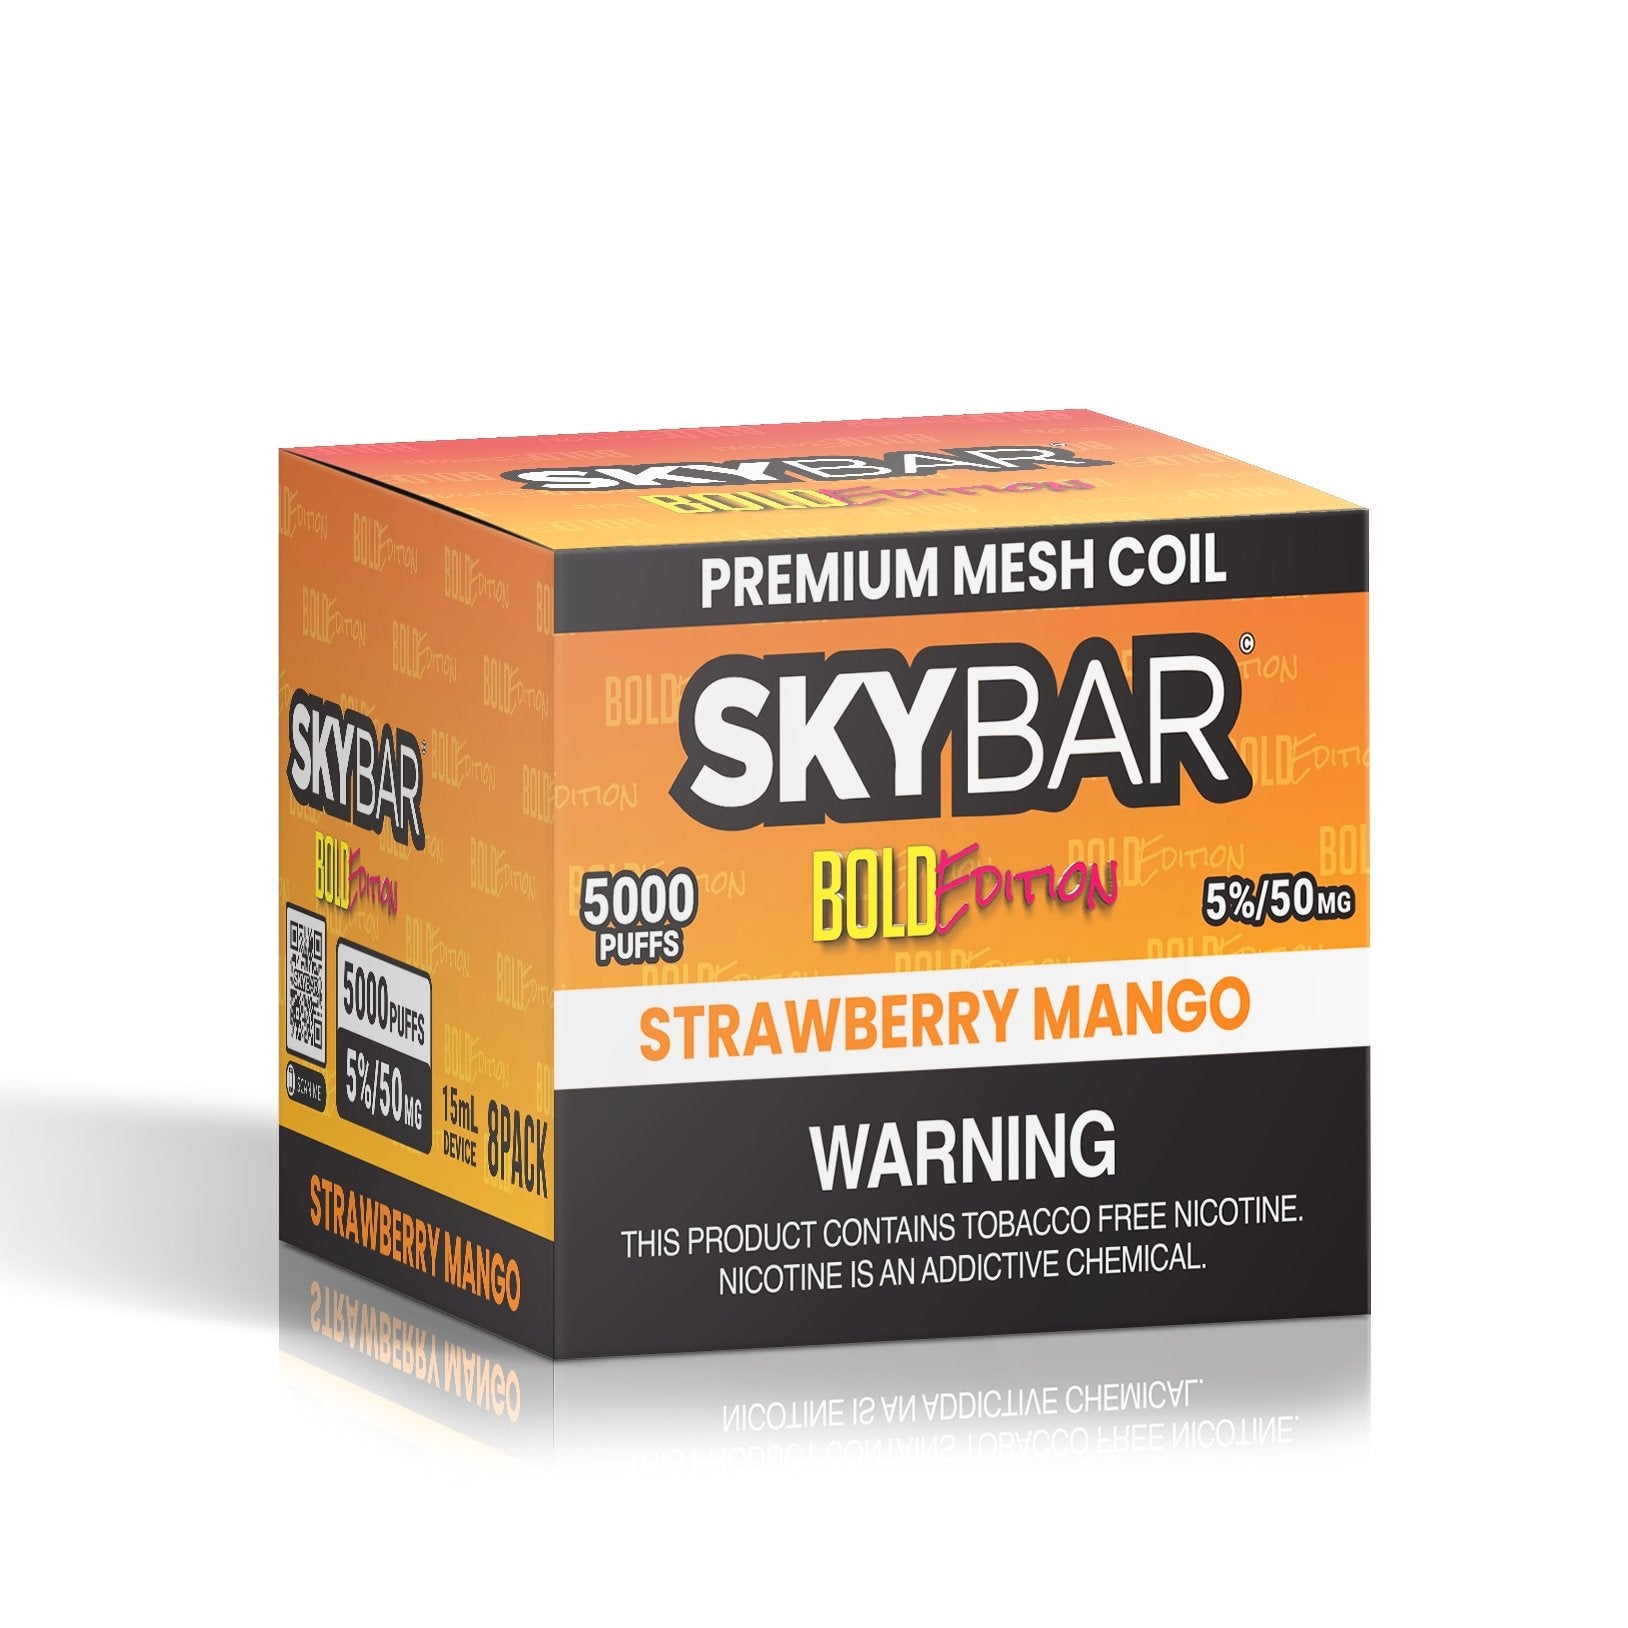 SKYBAR BOLD 5000 PUFFS 5% Nic BOX 8ct - Skybar